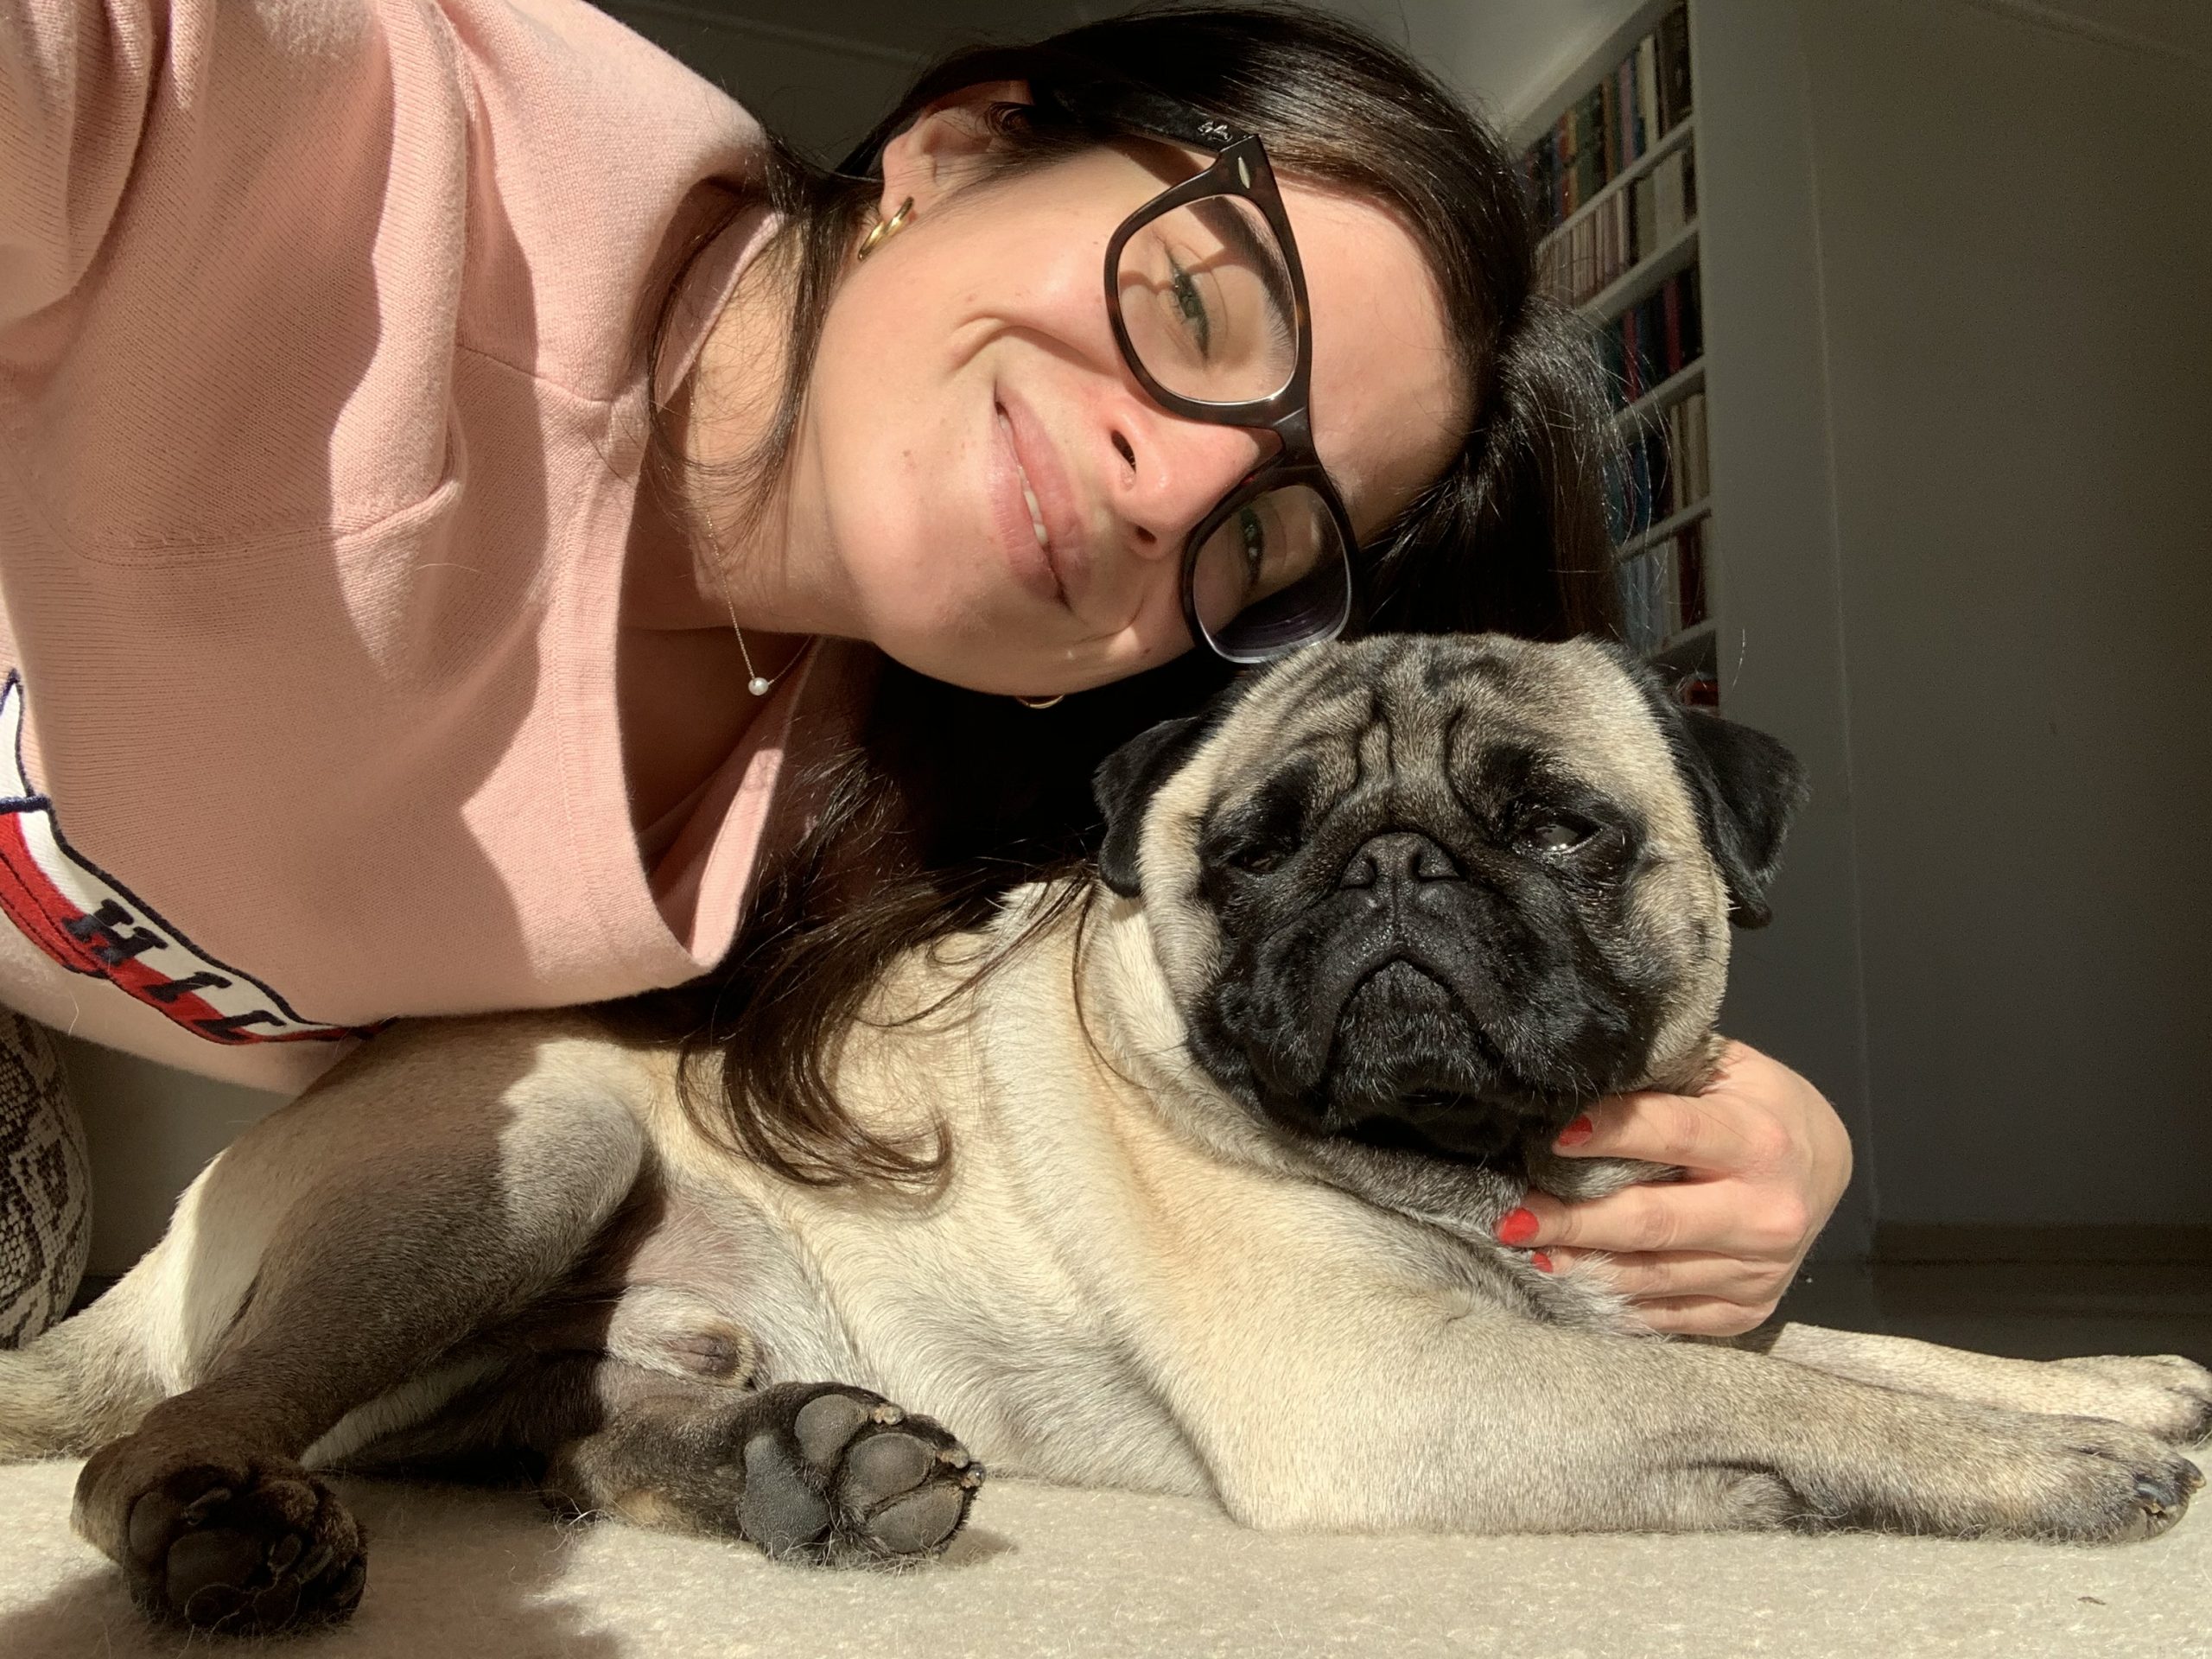 Παγκόσμια ημέρα σκύλου: η Αλεξάνδρα μιλάει για τη ζωή της με το Μπρούνο